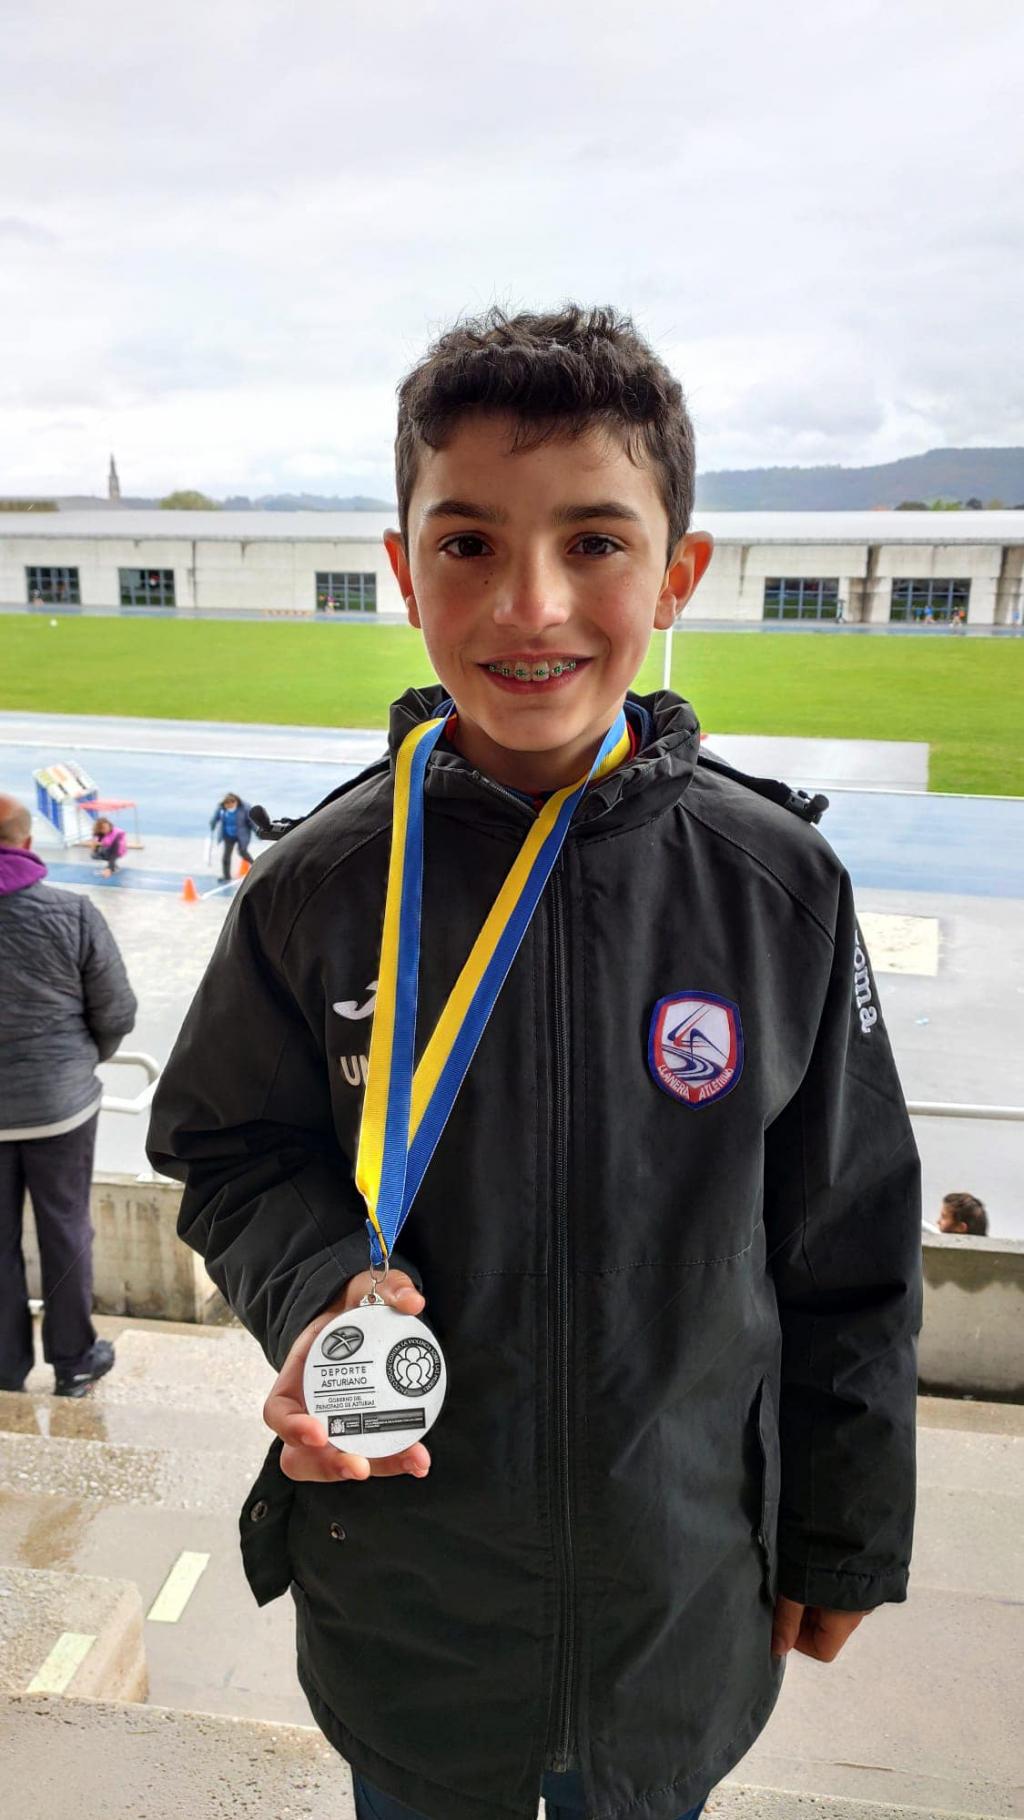 El Tapin - Muy buenos resultados para el Llanera Atletismo en los Juegos Deportivos y el campeonato de Asturias absoluto de clubes